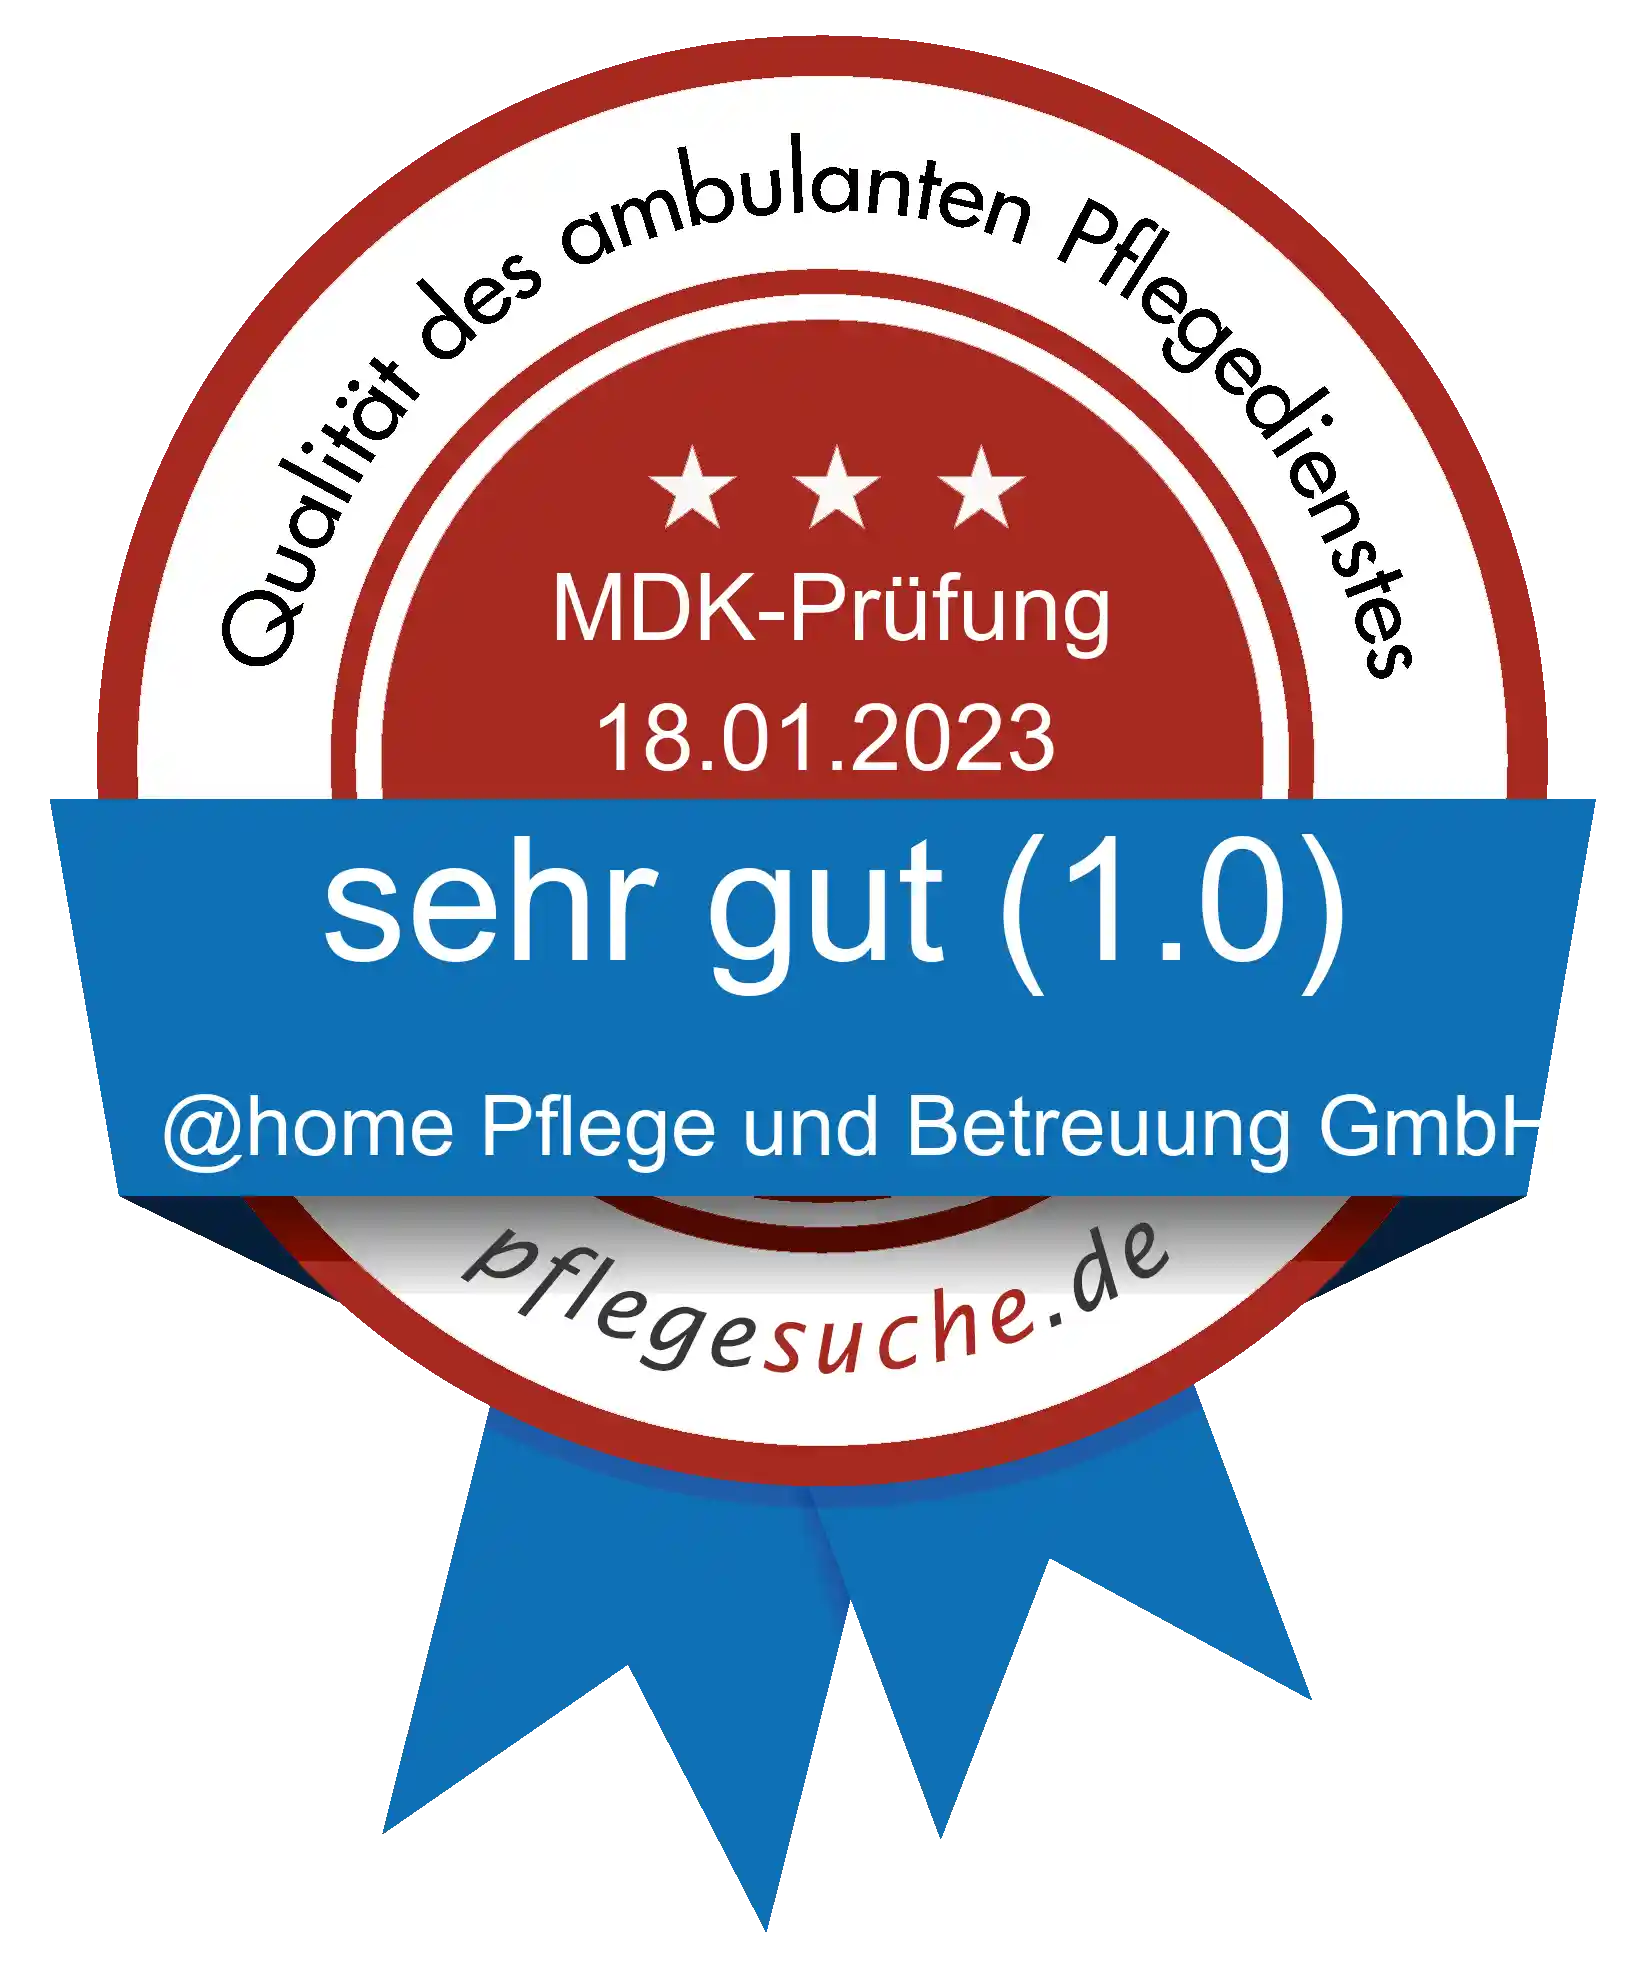 Siegel Benotung: @home Pflege und Betreuung GmbH